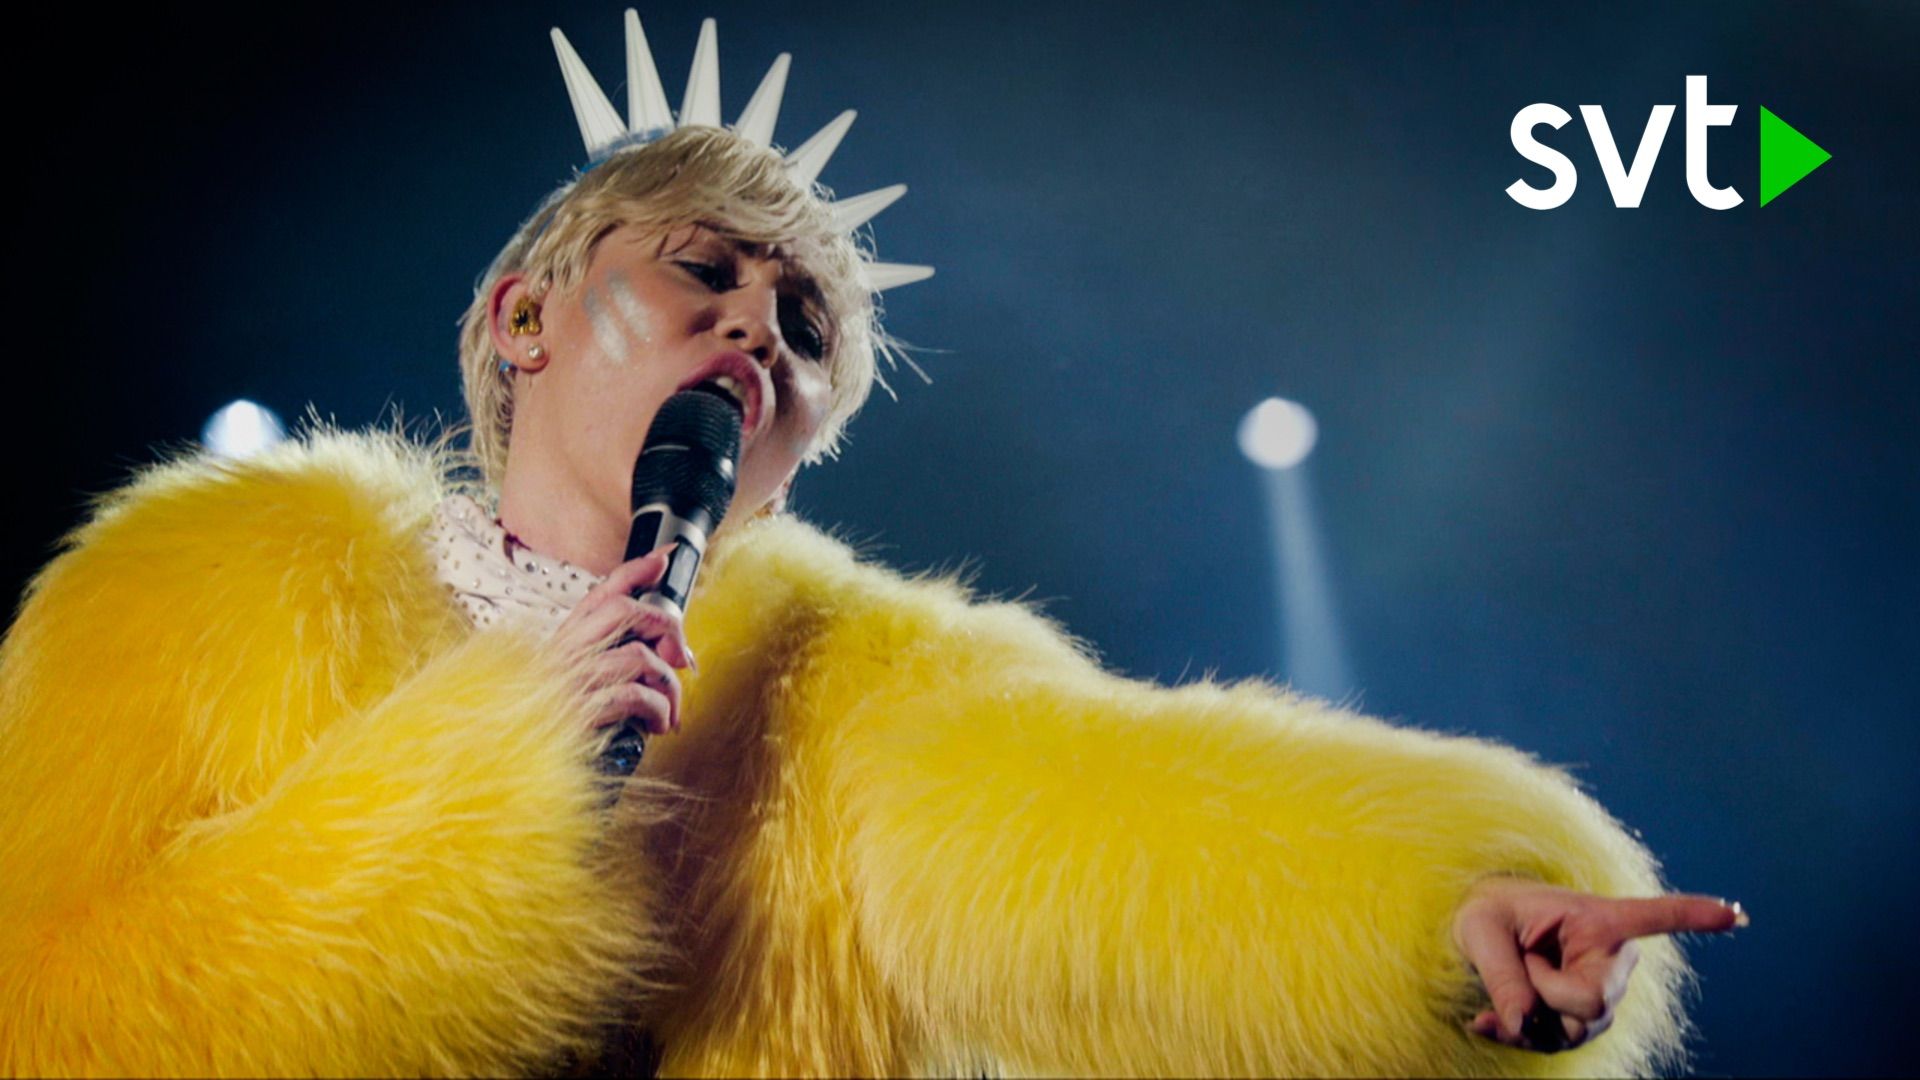 Miley Cyrus: Bangerz Tour Backdrop